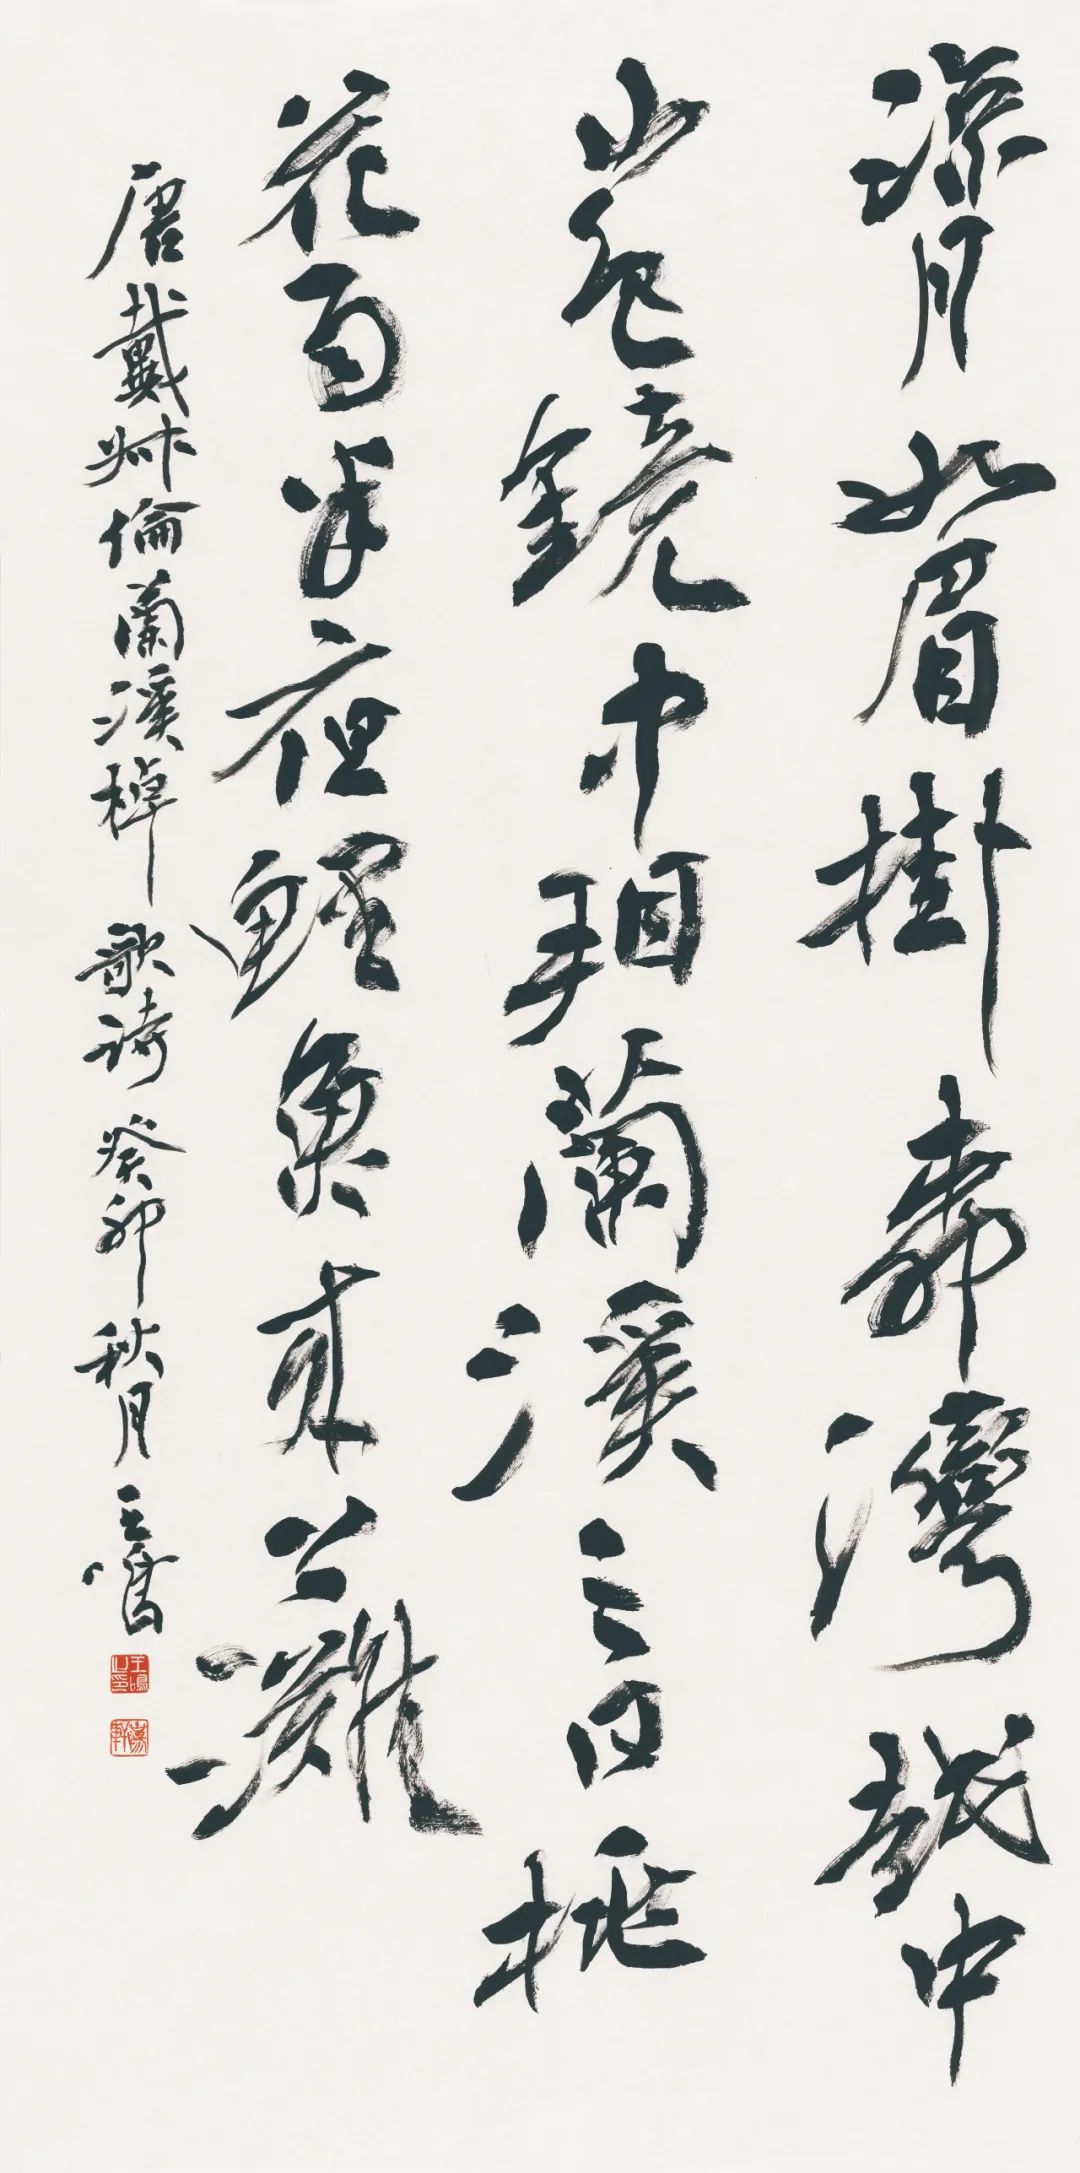 藏·展览丨纸笺传情，笔墨放歌——河南书法名家邀请展 12月24日开幕(图8)